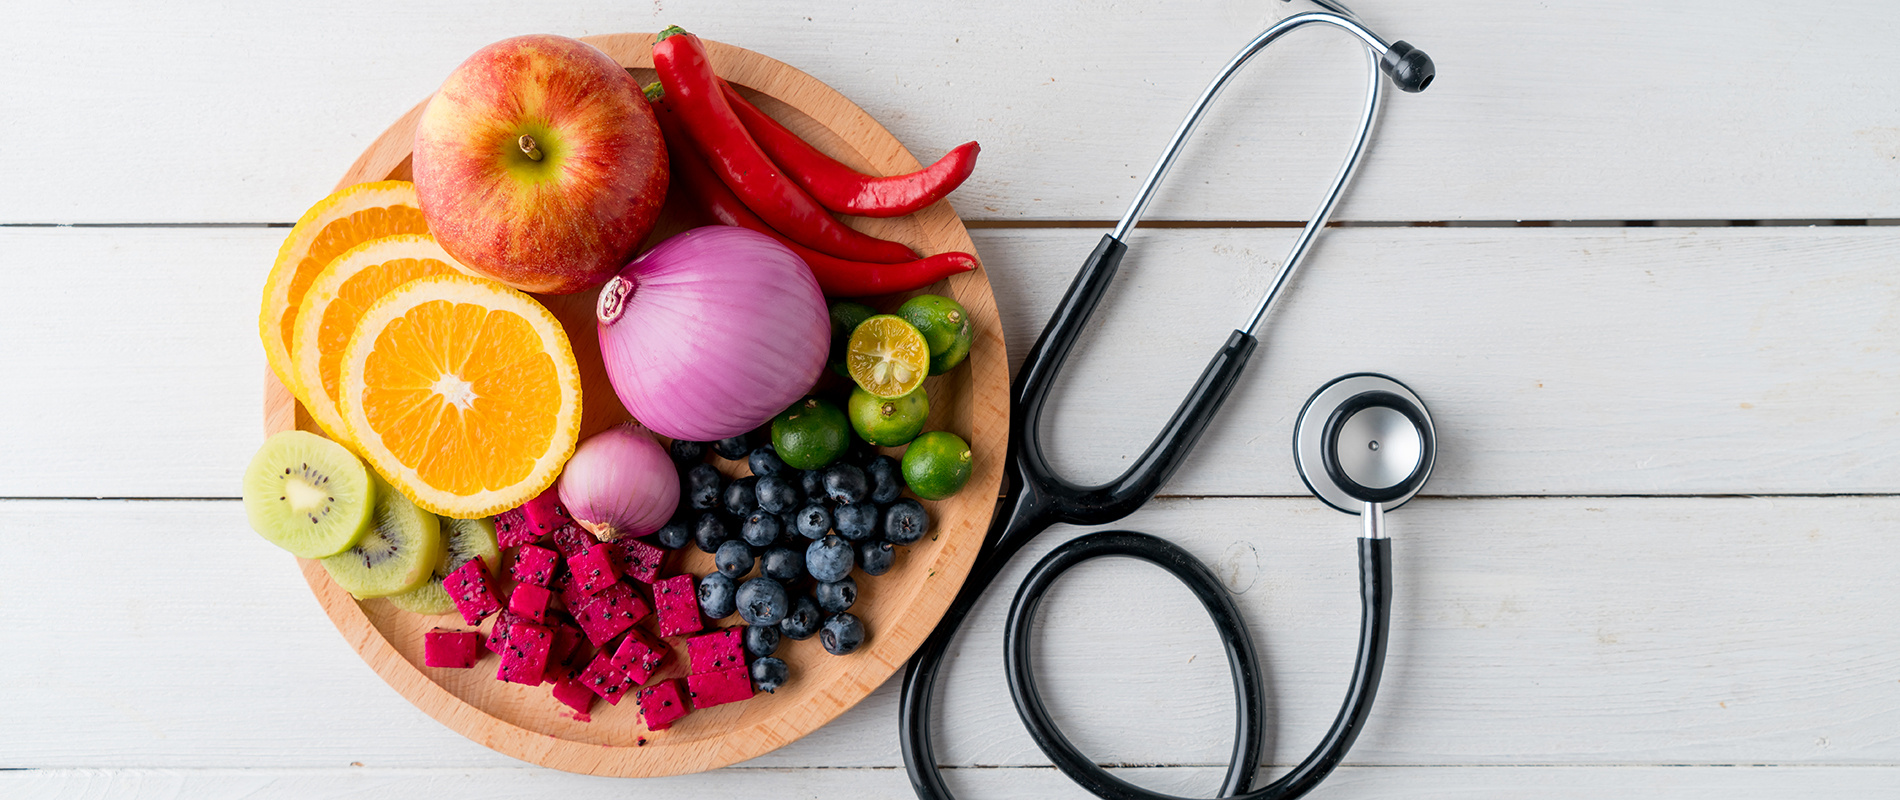 magas vérnyomás esetén hasznos élelmiszertermékek kiwi hipertónia kezelése